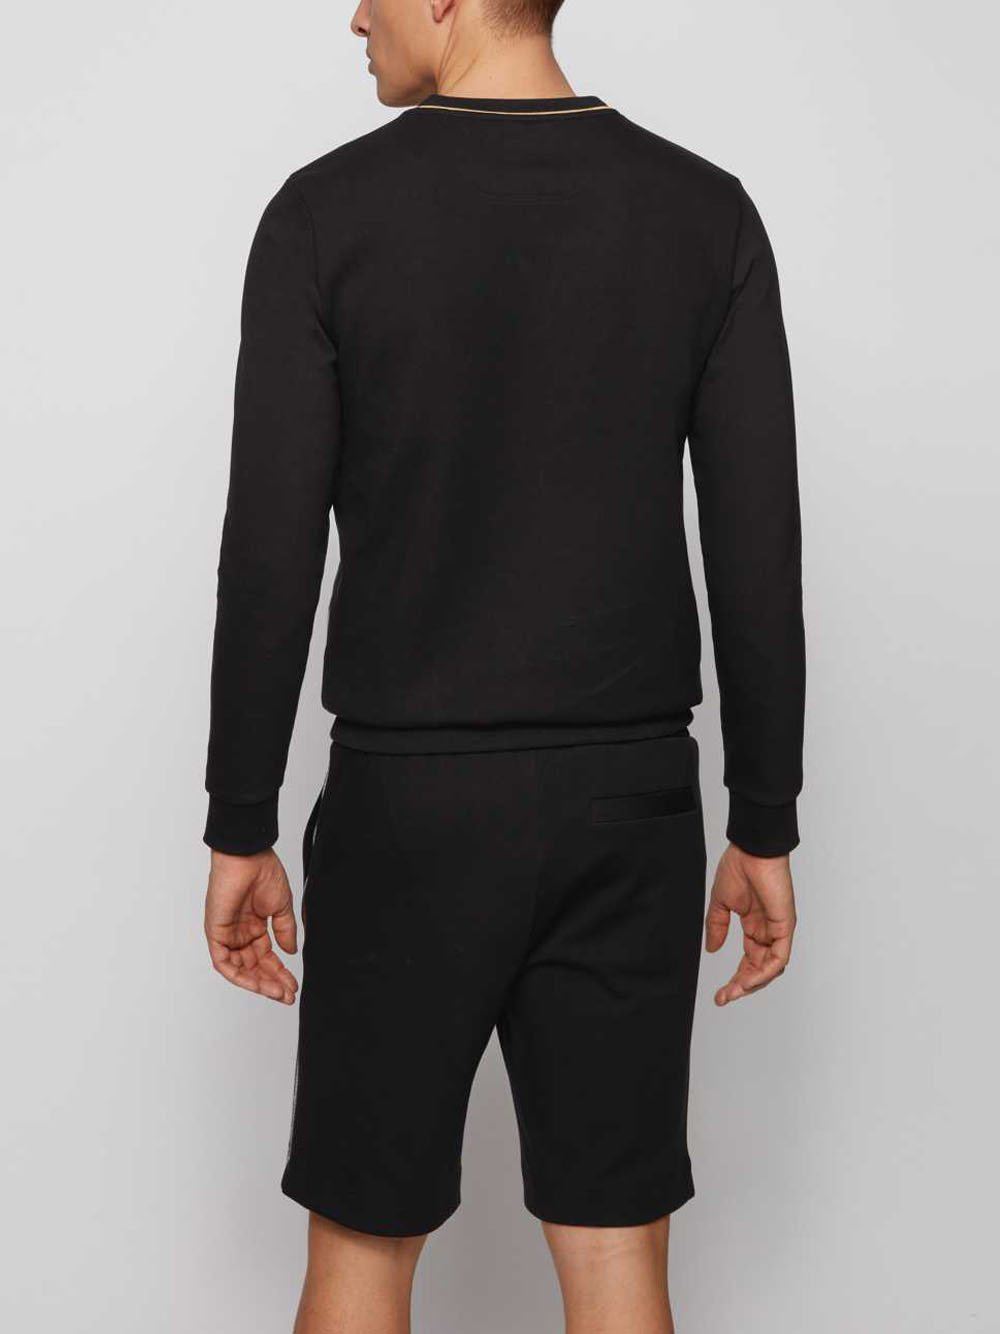 BOSS Logo Print Slim-fit Sweatshirt Black - MAISONDEFASHION.COM